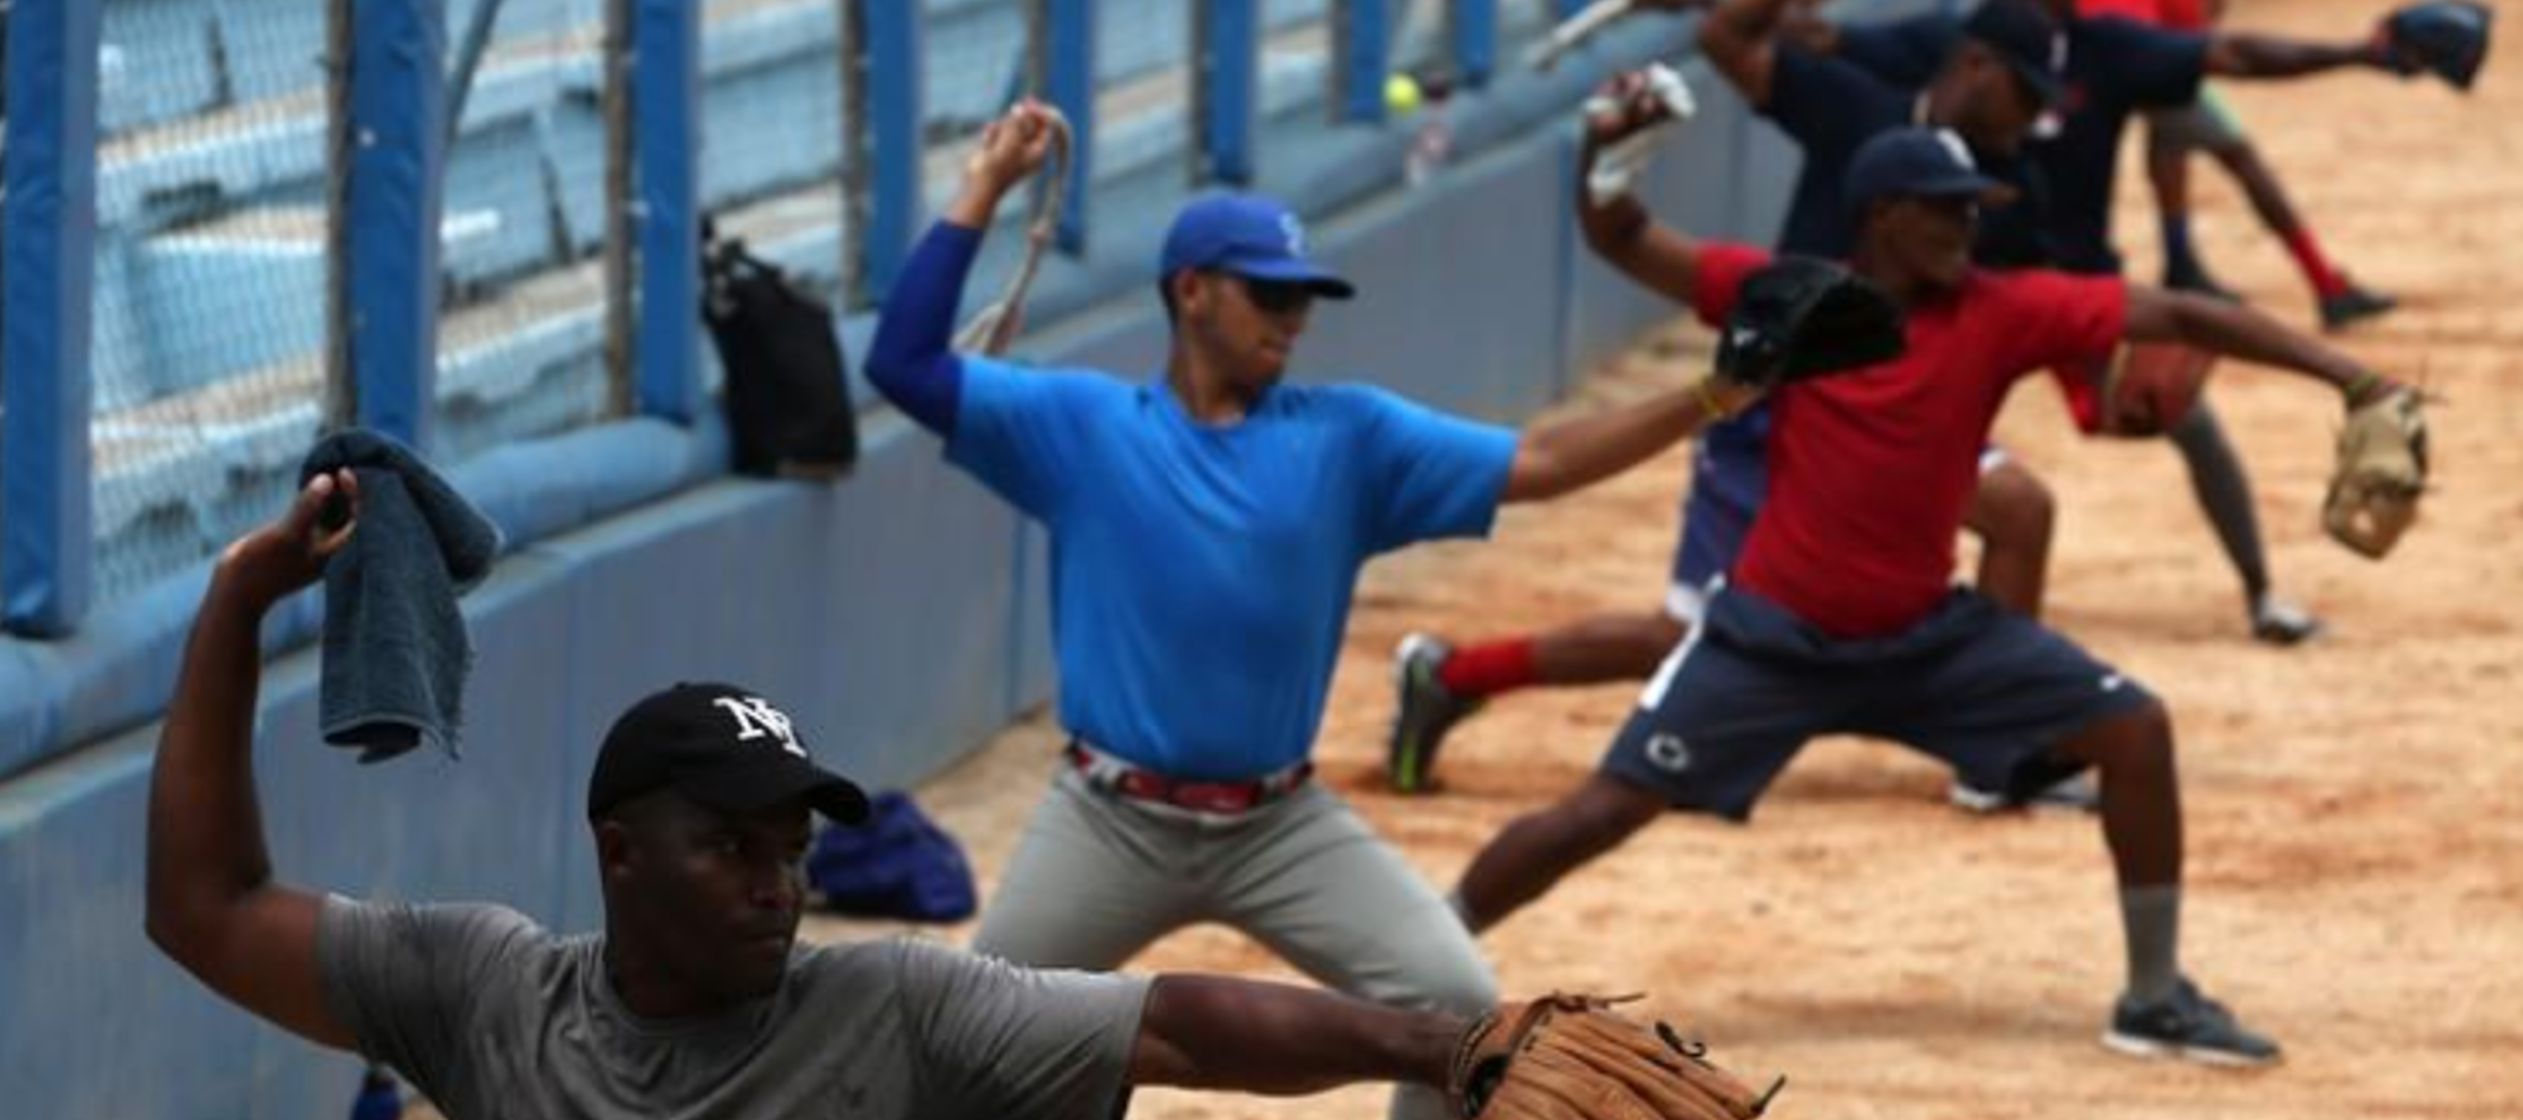 La medida esencialmente anula el acuerdo alcanzado entre la MLB y la federación cubana en...